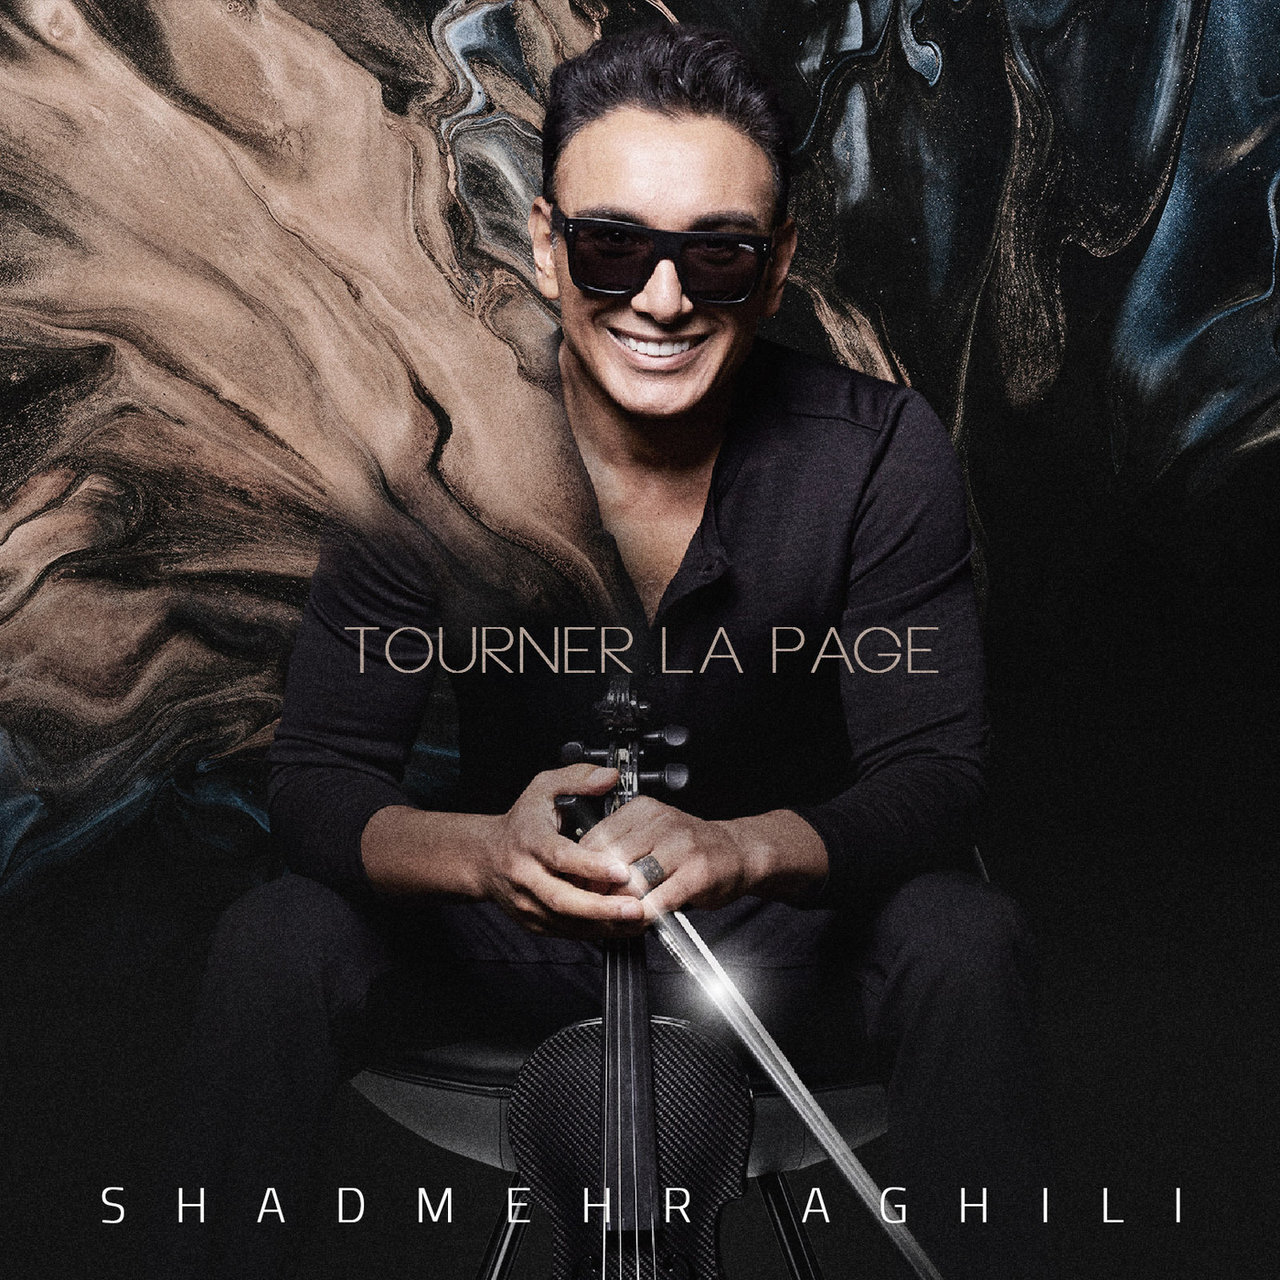 دانلود آهنگ جدید شادمهر عقیلی به نام Tourner La Page